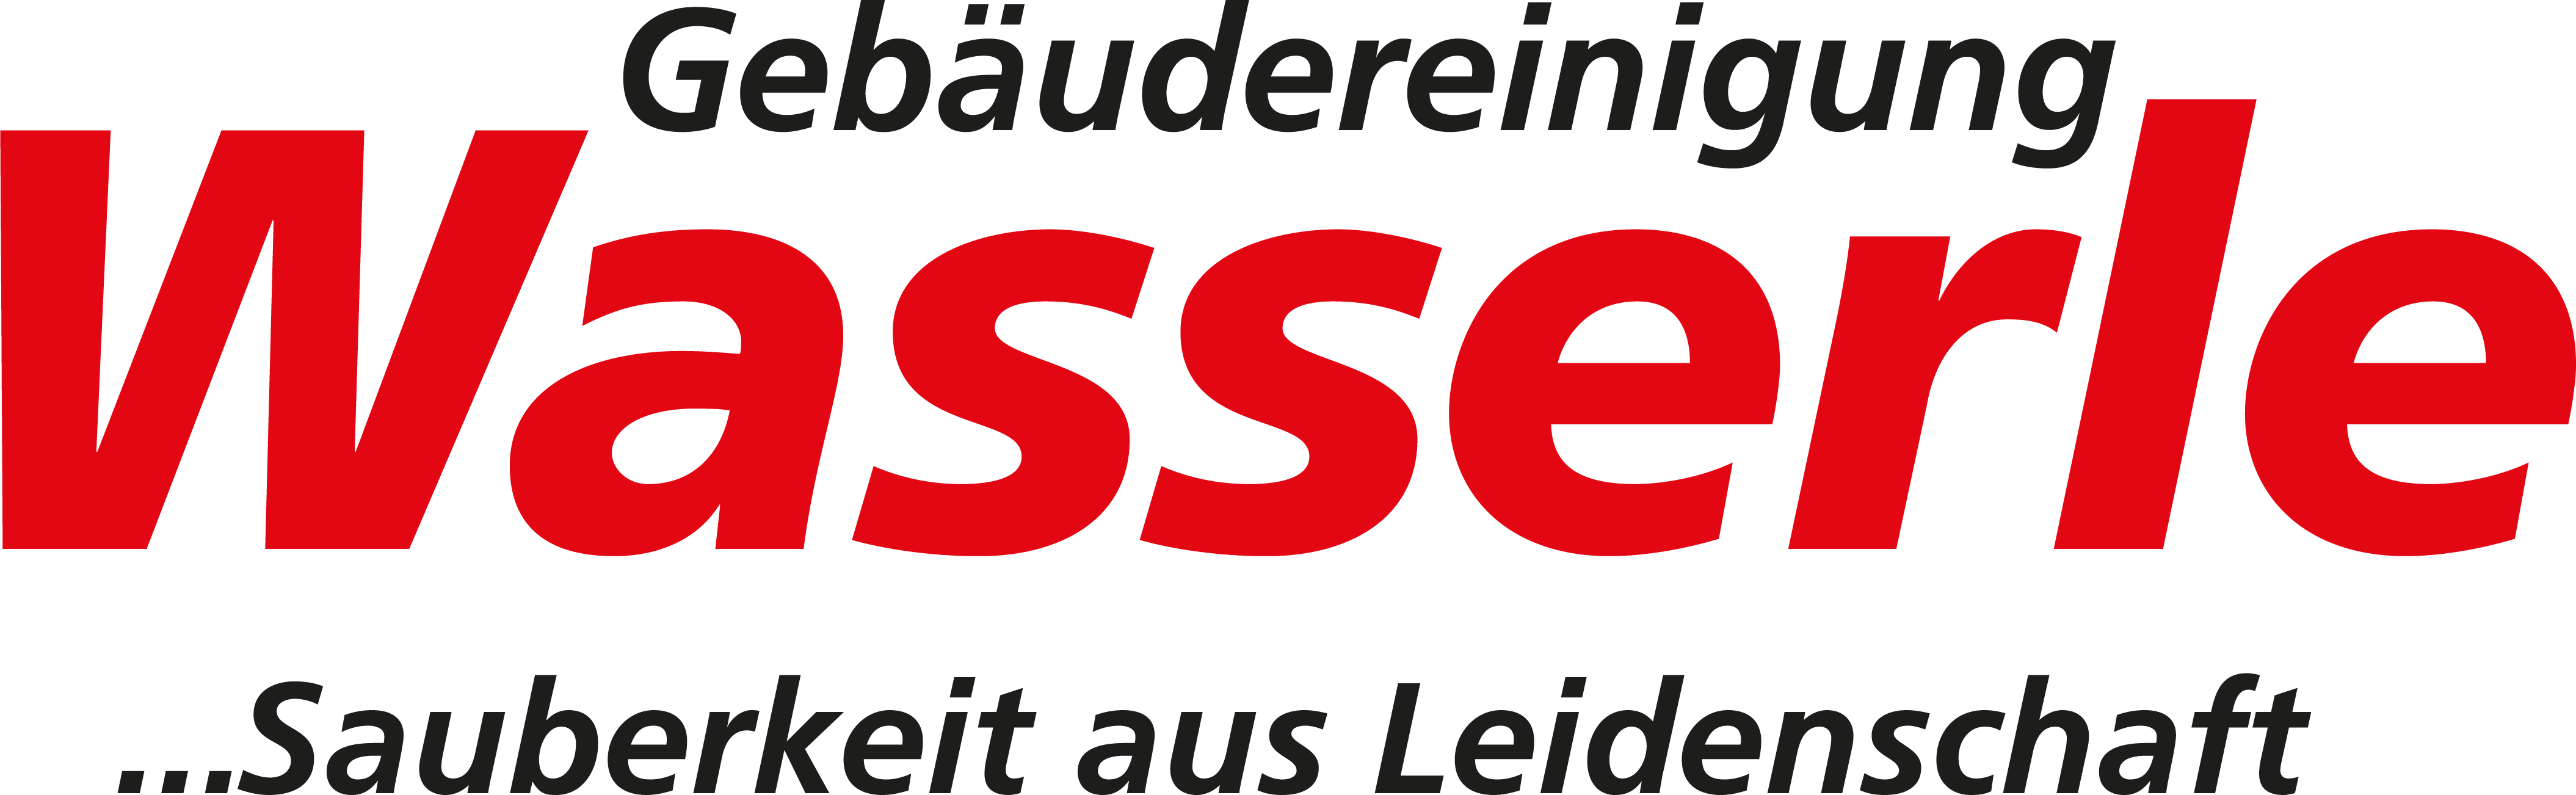 Wasserle GmbH